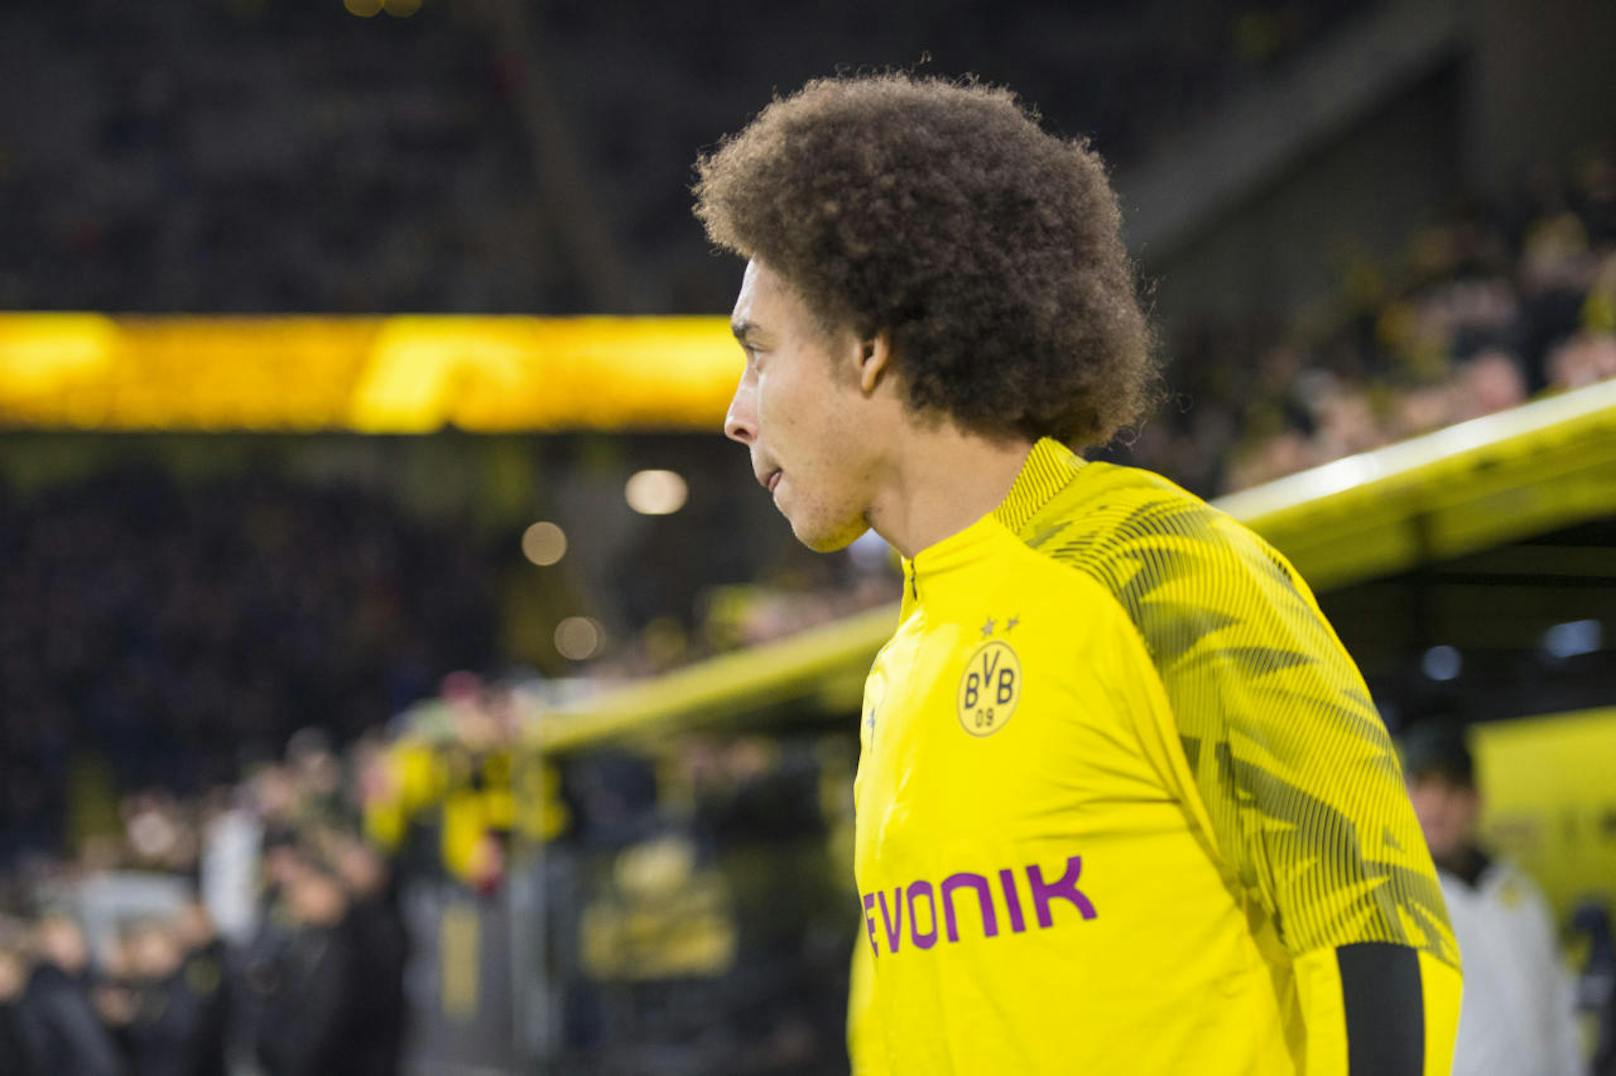 Im Dezember 2019 musste Borussia Dortmund ohne Mittelfeldspieler Axel Witsel auskommen. Der Grund dafür: Weil das Treppenschutzgitter seiner Kinder nicht versperrt war, stürzte der Belgier über die Treppe, musste sogar auf der Intensivstation behandelt werde. 